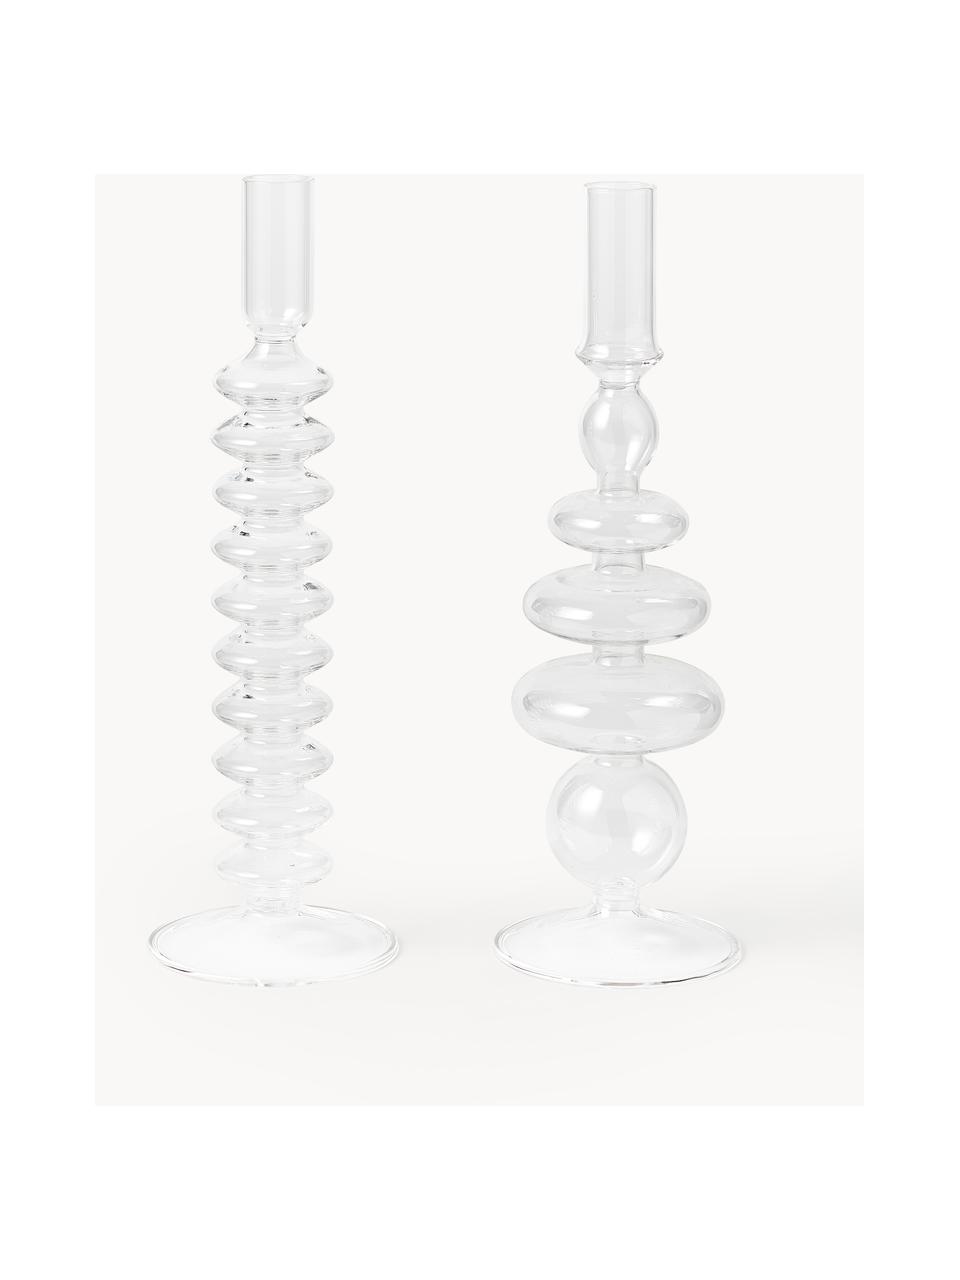 Kerzenhalter Clea, 2er-Set, Glas, Transparent, Set mit verschiedenen Grössen